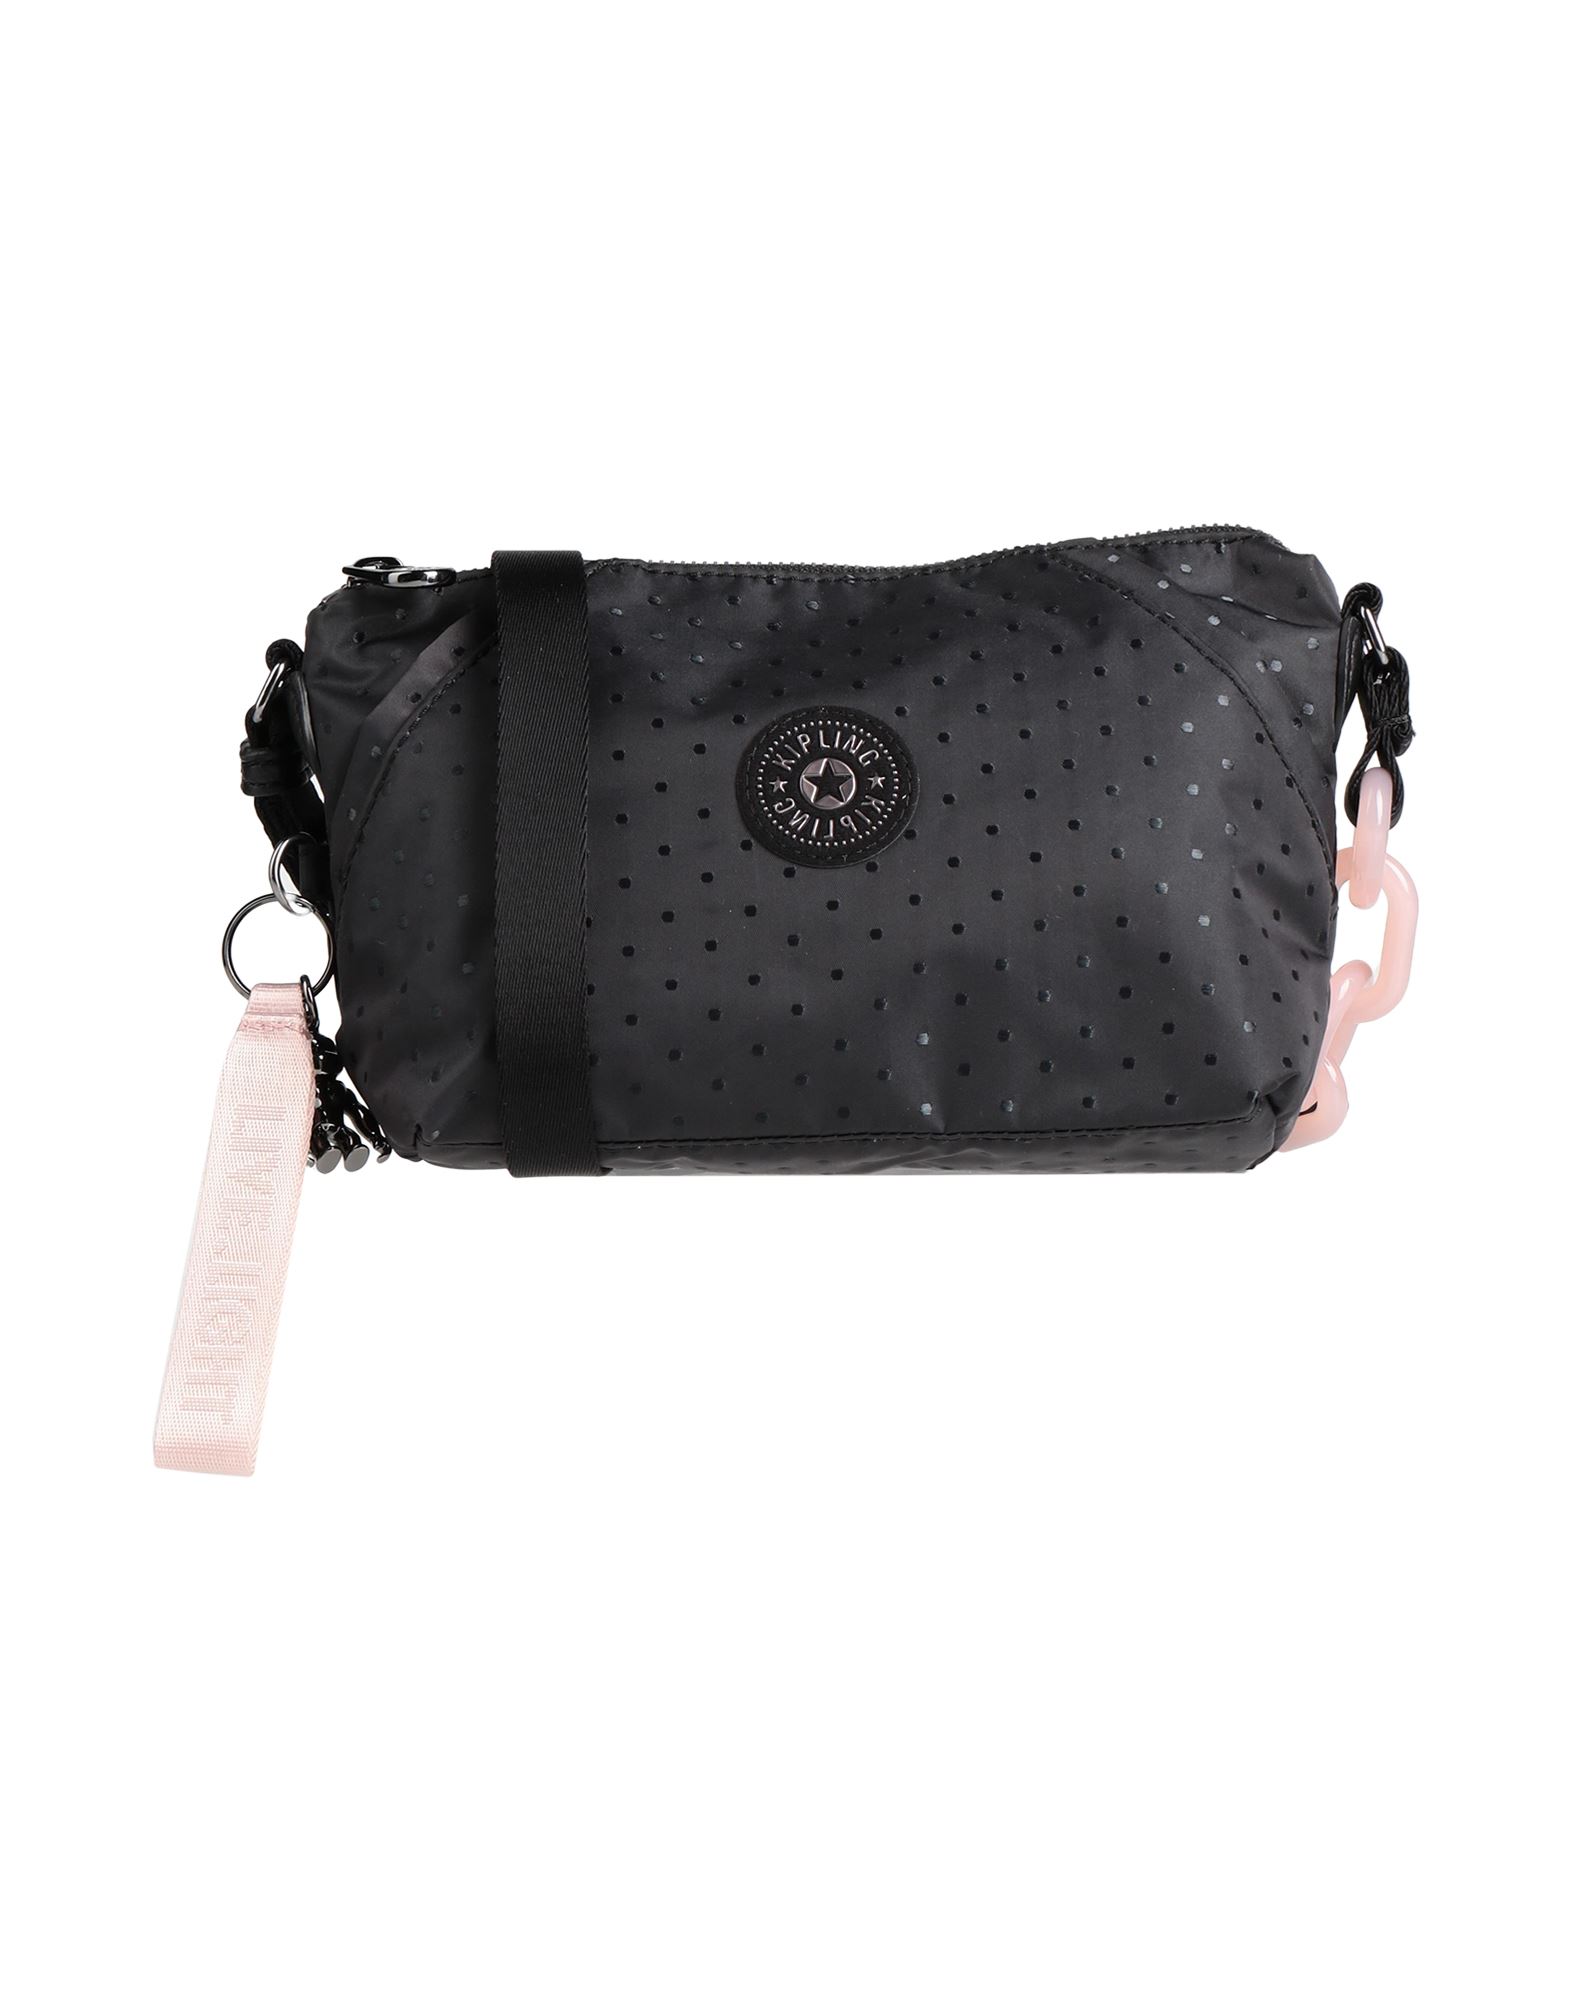 Kipling Handbags In Black